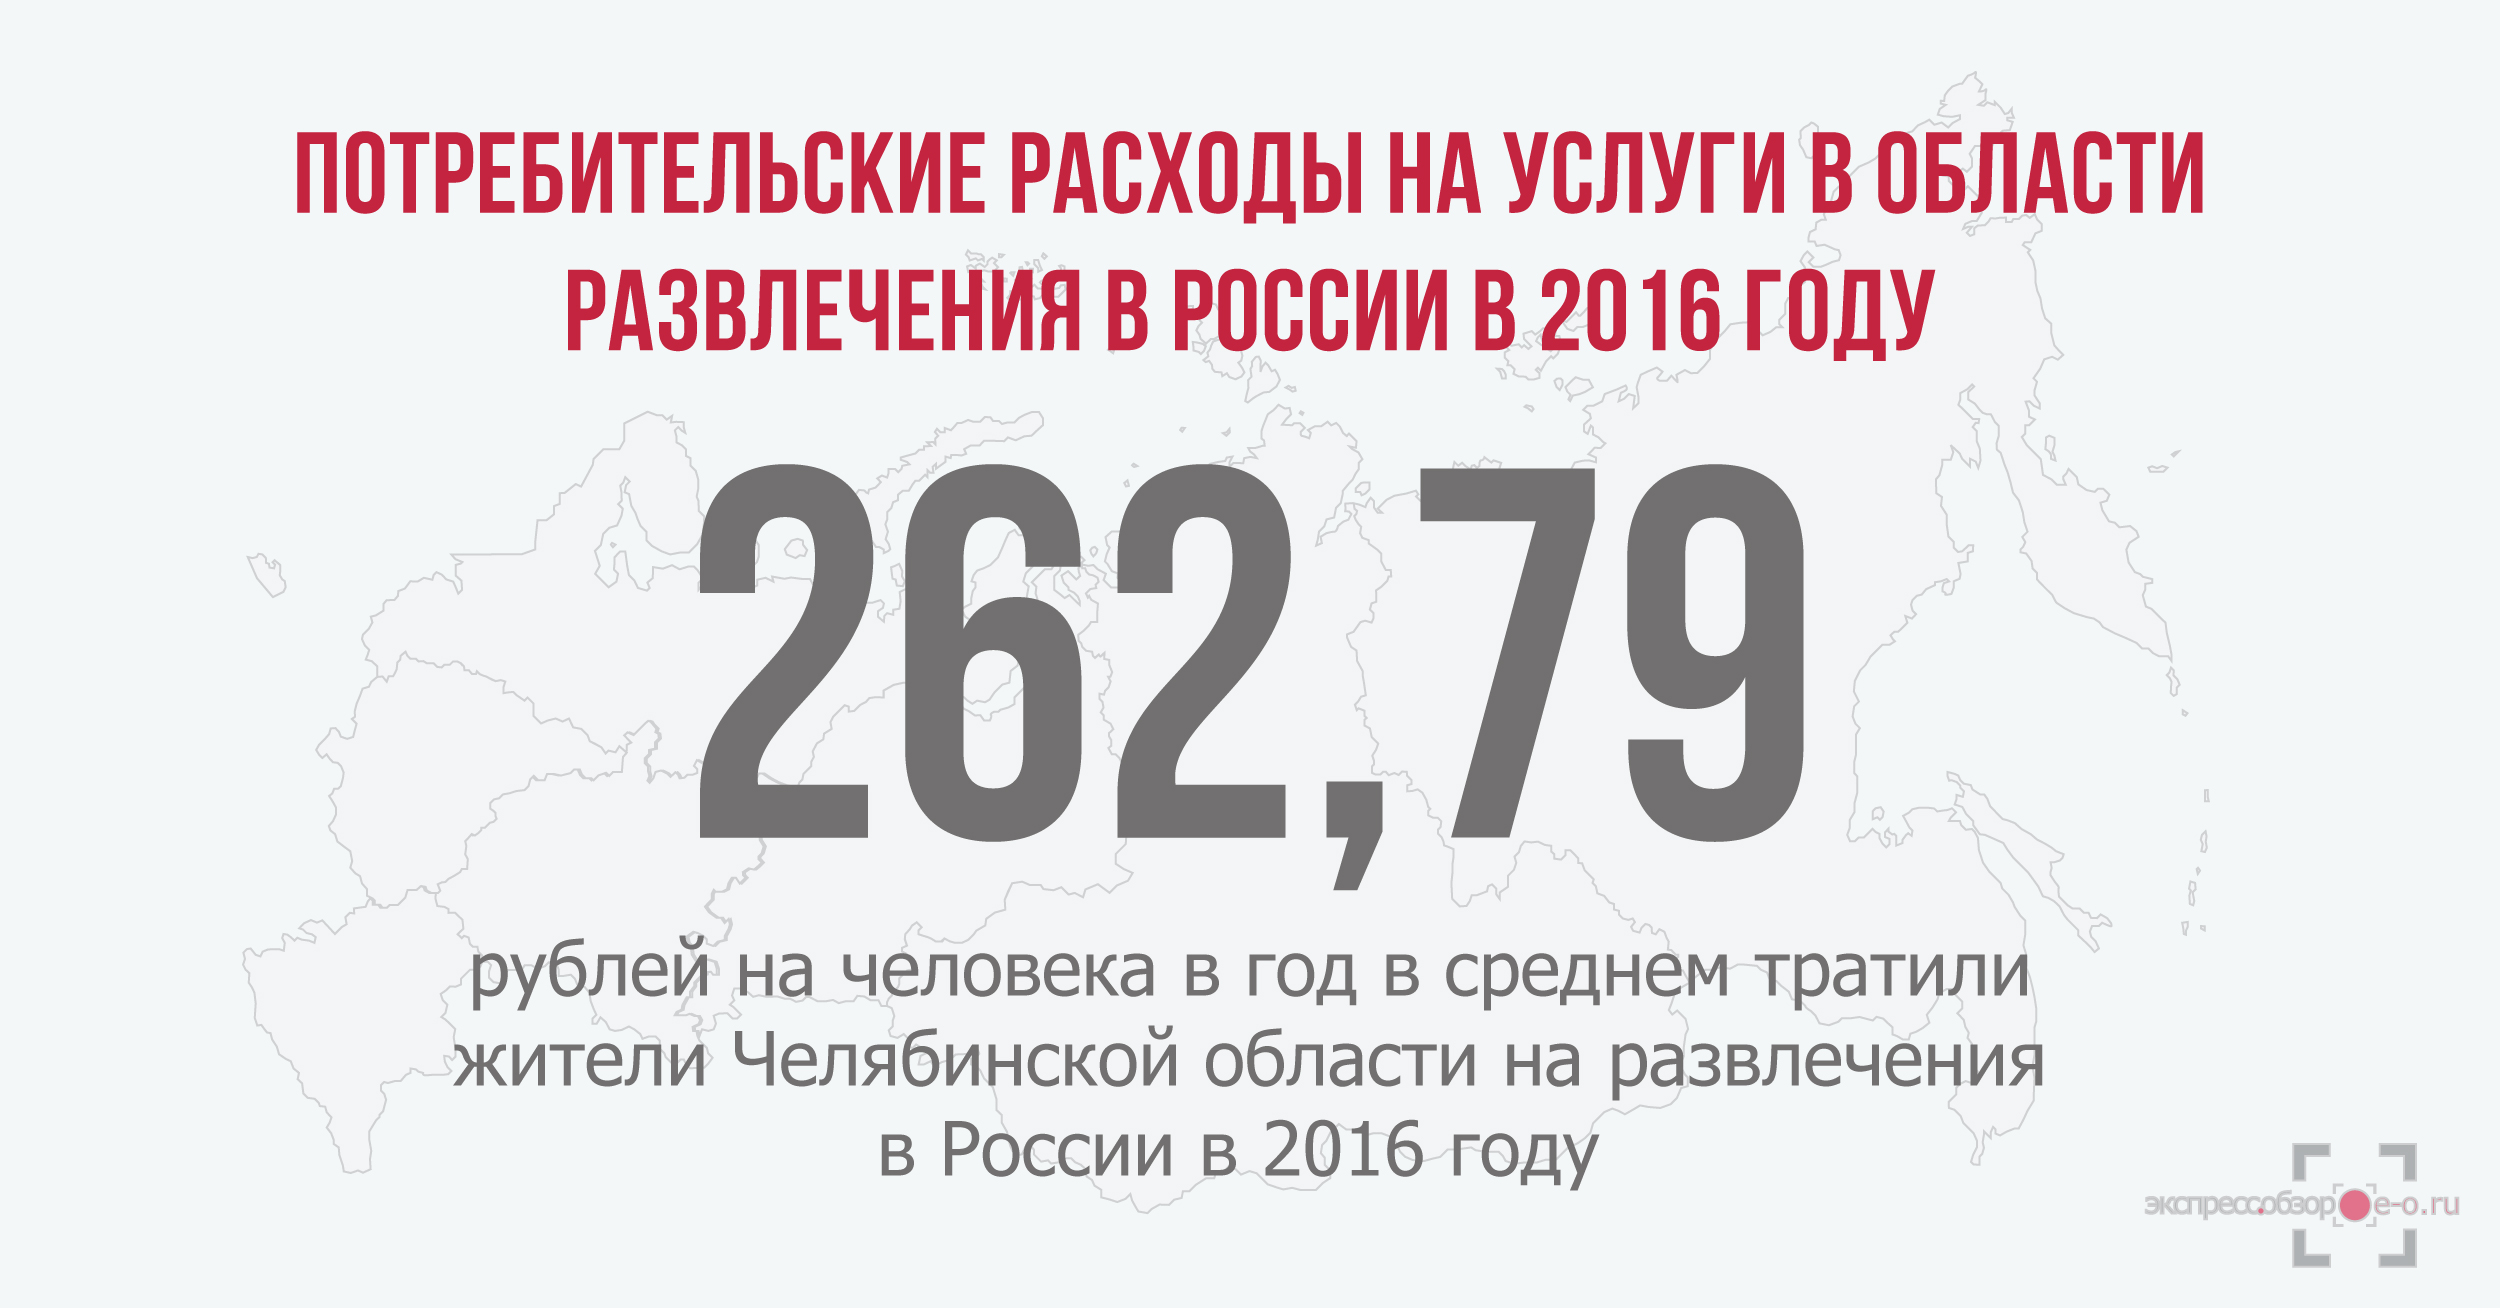 Потребительские расходы на развлечения в России